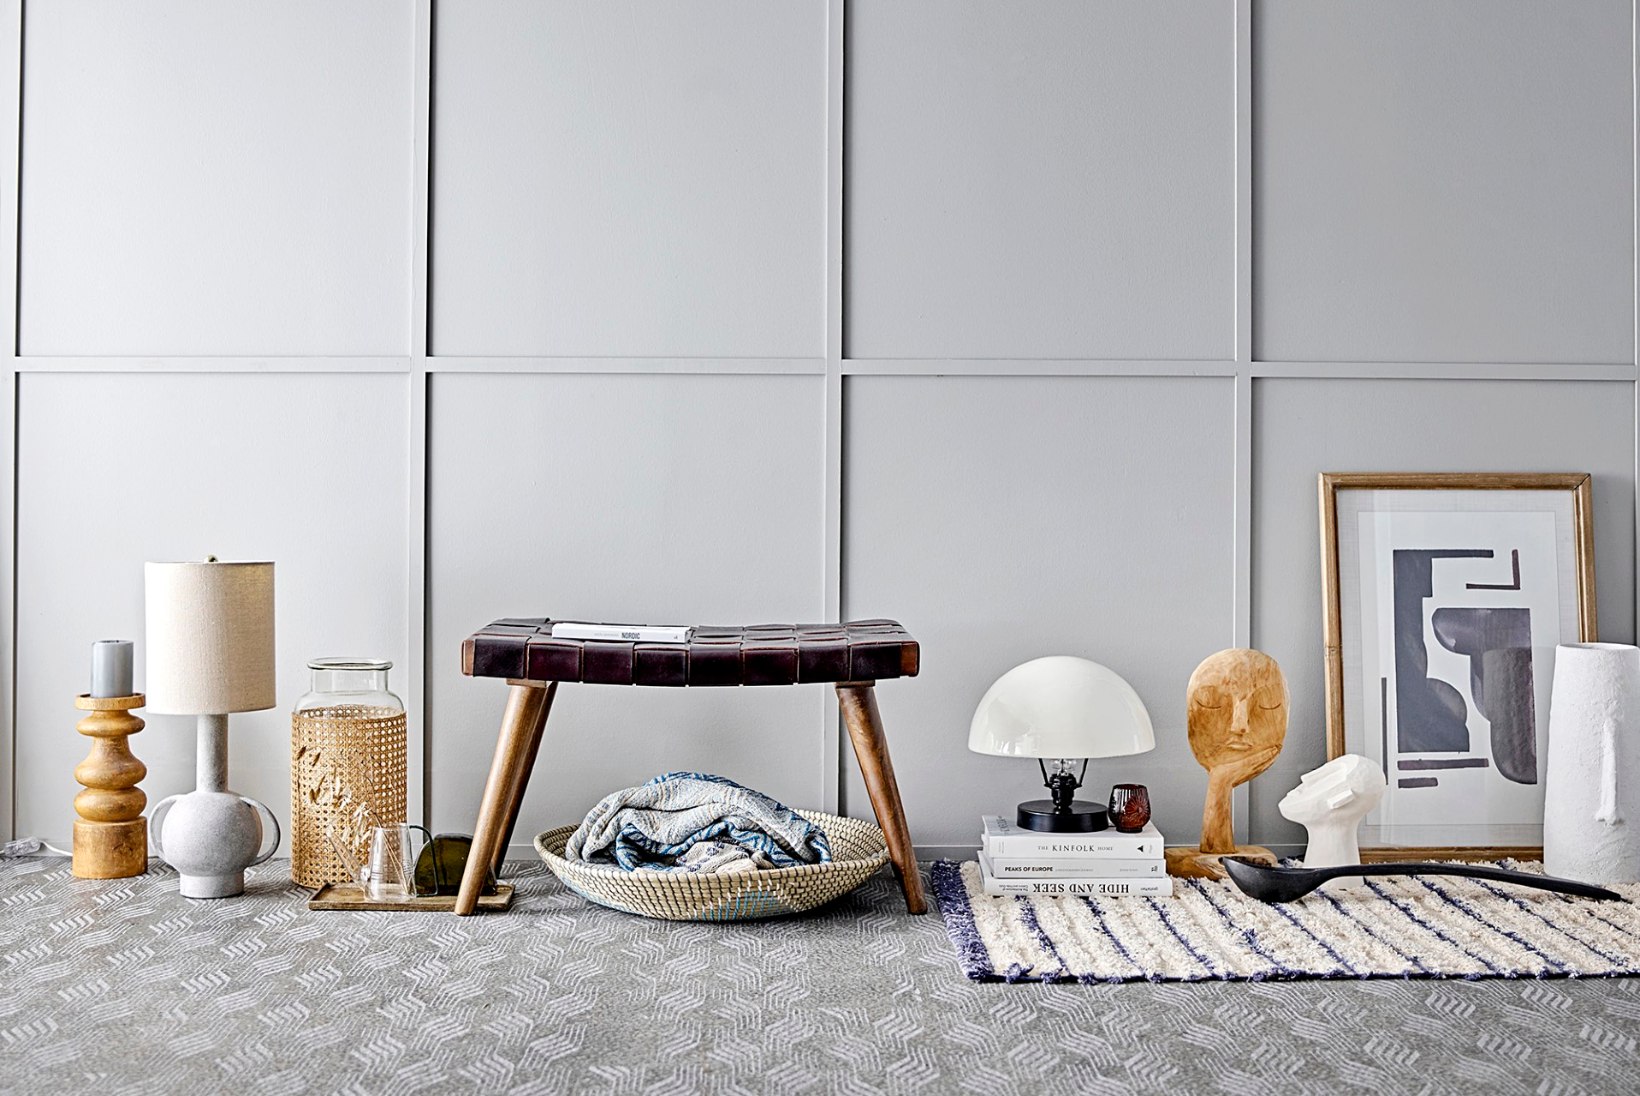 Kodukirja sisustusuudised oktoobris: minimalistlik Taani disain, makrameekunst ja sügistoonides keraamika